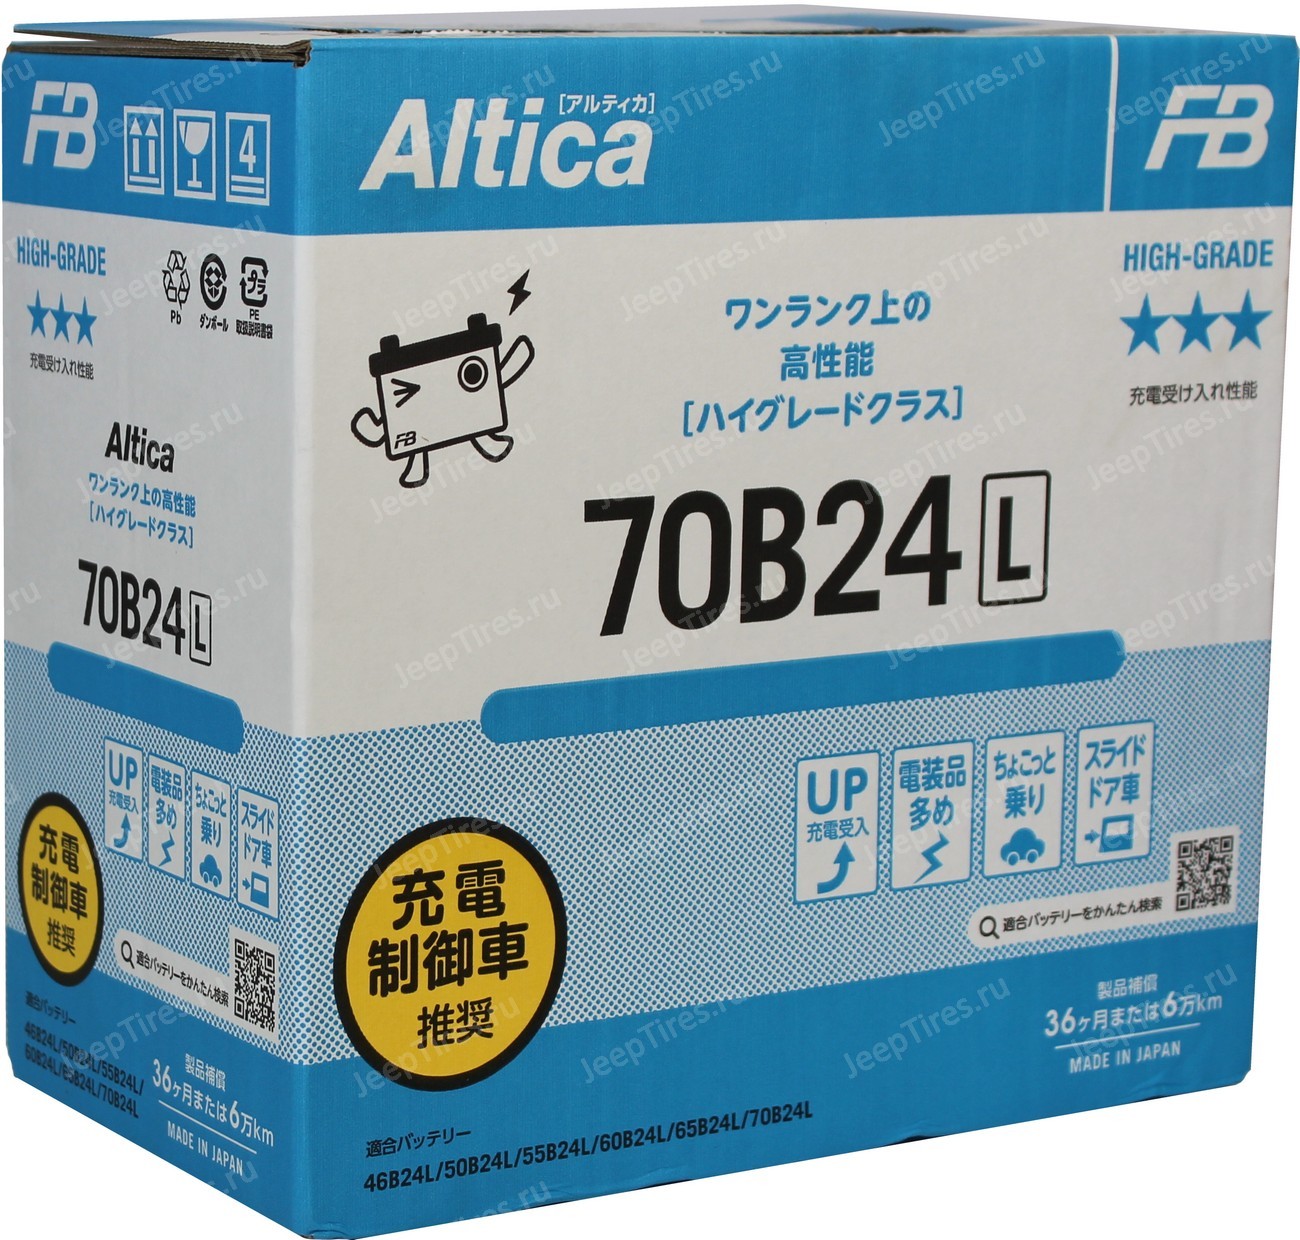 Furukawa battery altica. Аккумулятор fb Altica High-Grade. Furukawa Battery fb 70b24r Altica. Fb Altica High-Grade. Fb Altica High-Grade 50 Ач 70b24l.